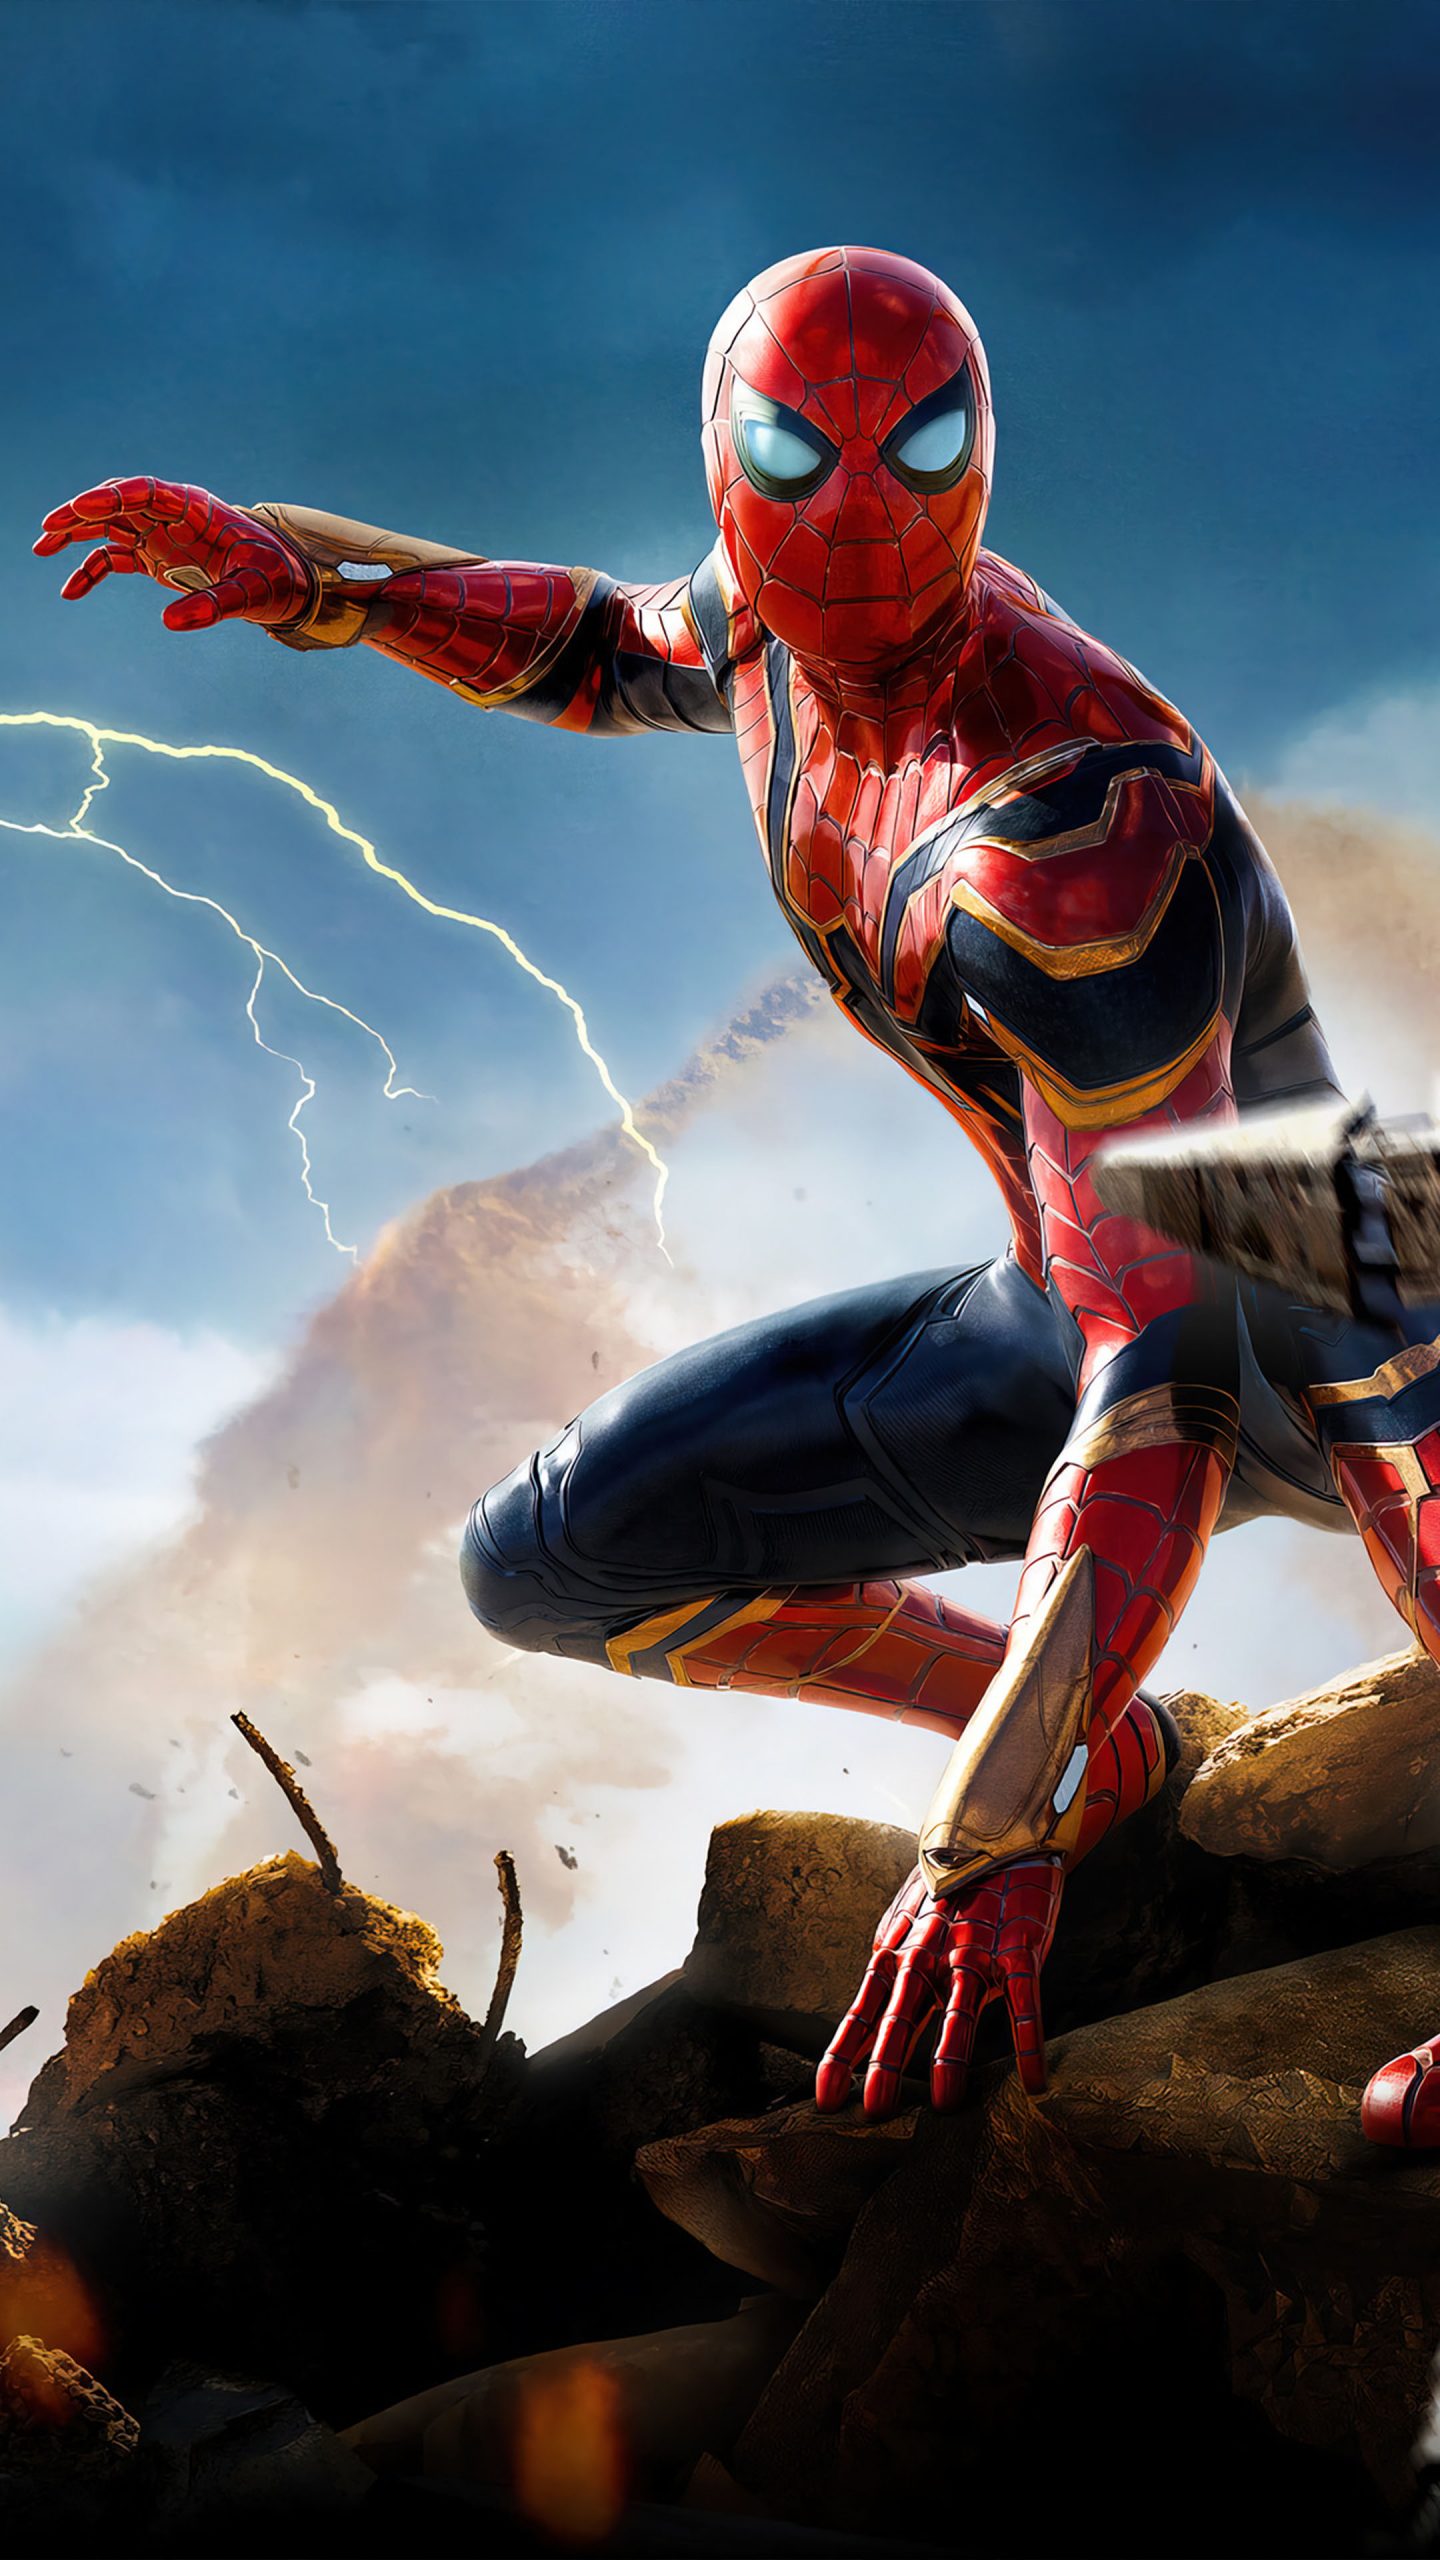 Spider-Man Thunder In No Way Home là bộ phim cực kỳ ấn tượng và hấp dẫn, và ngay bây giờ bạn có thể cập nhật hình nền điện thoại với chủ đề Spider-Man chuẩn 4K Ultra HD. Cắm cổng USB và tải ngay những hình nền đẹp nhất.